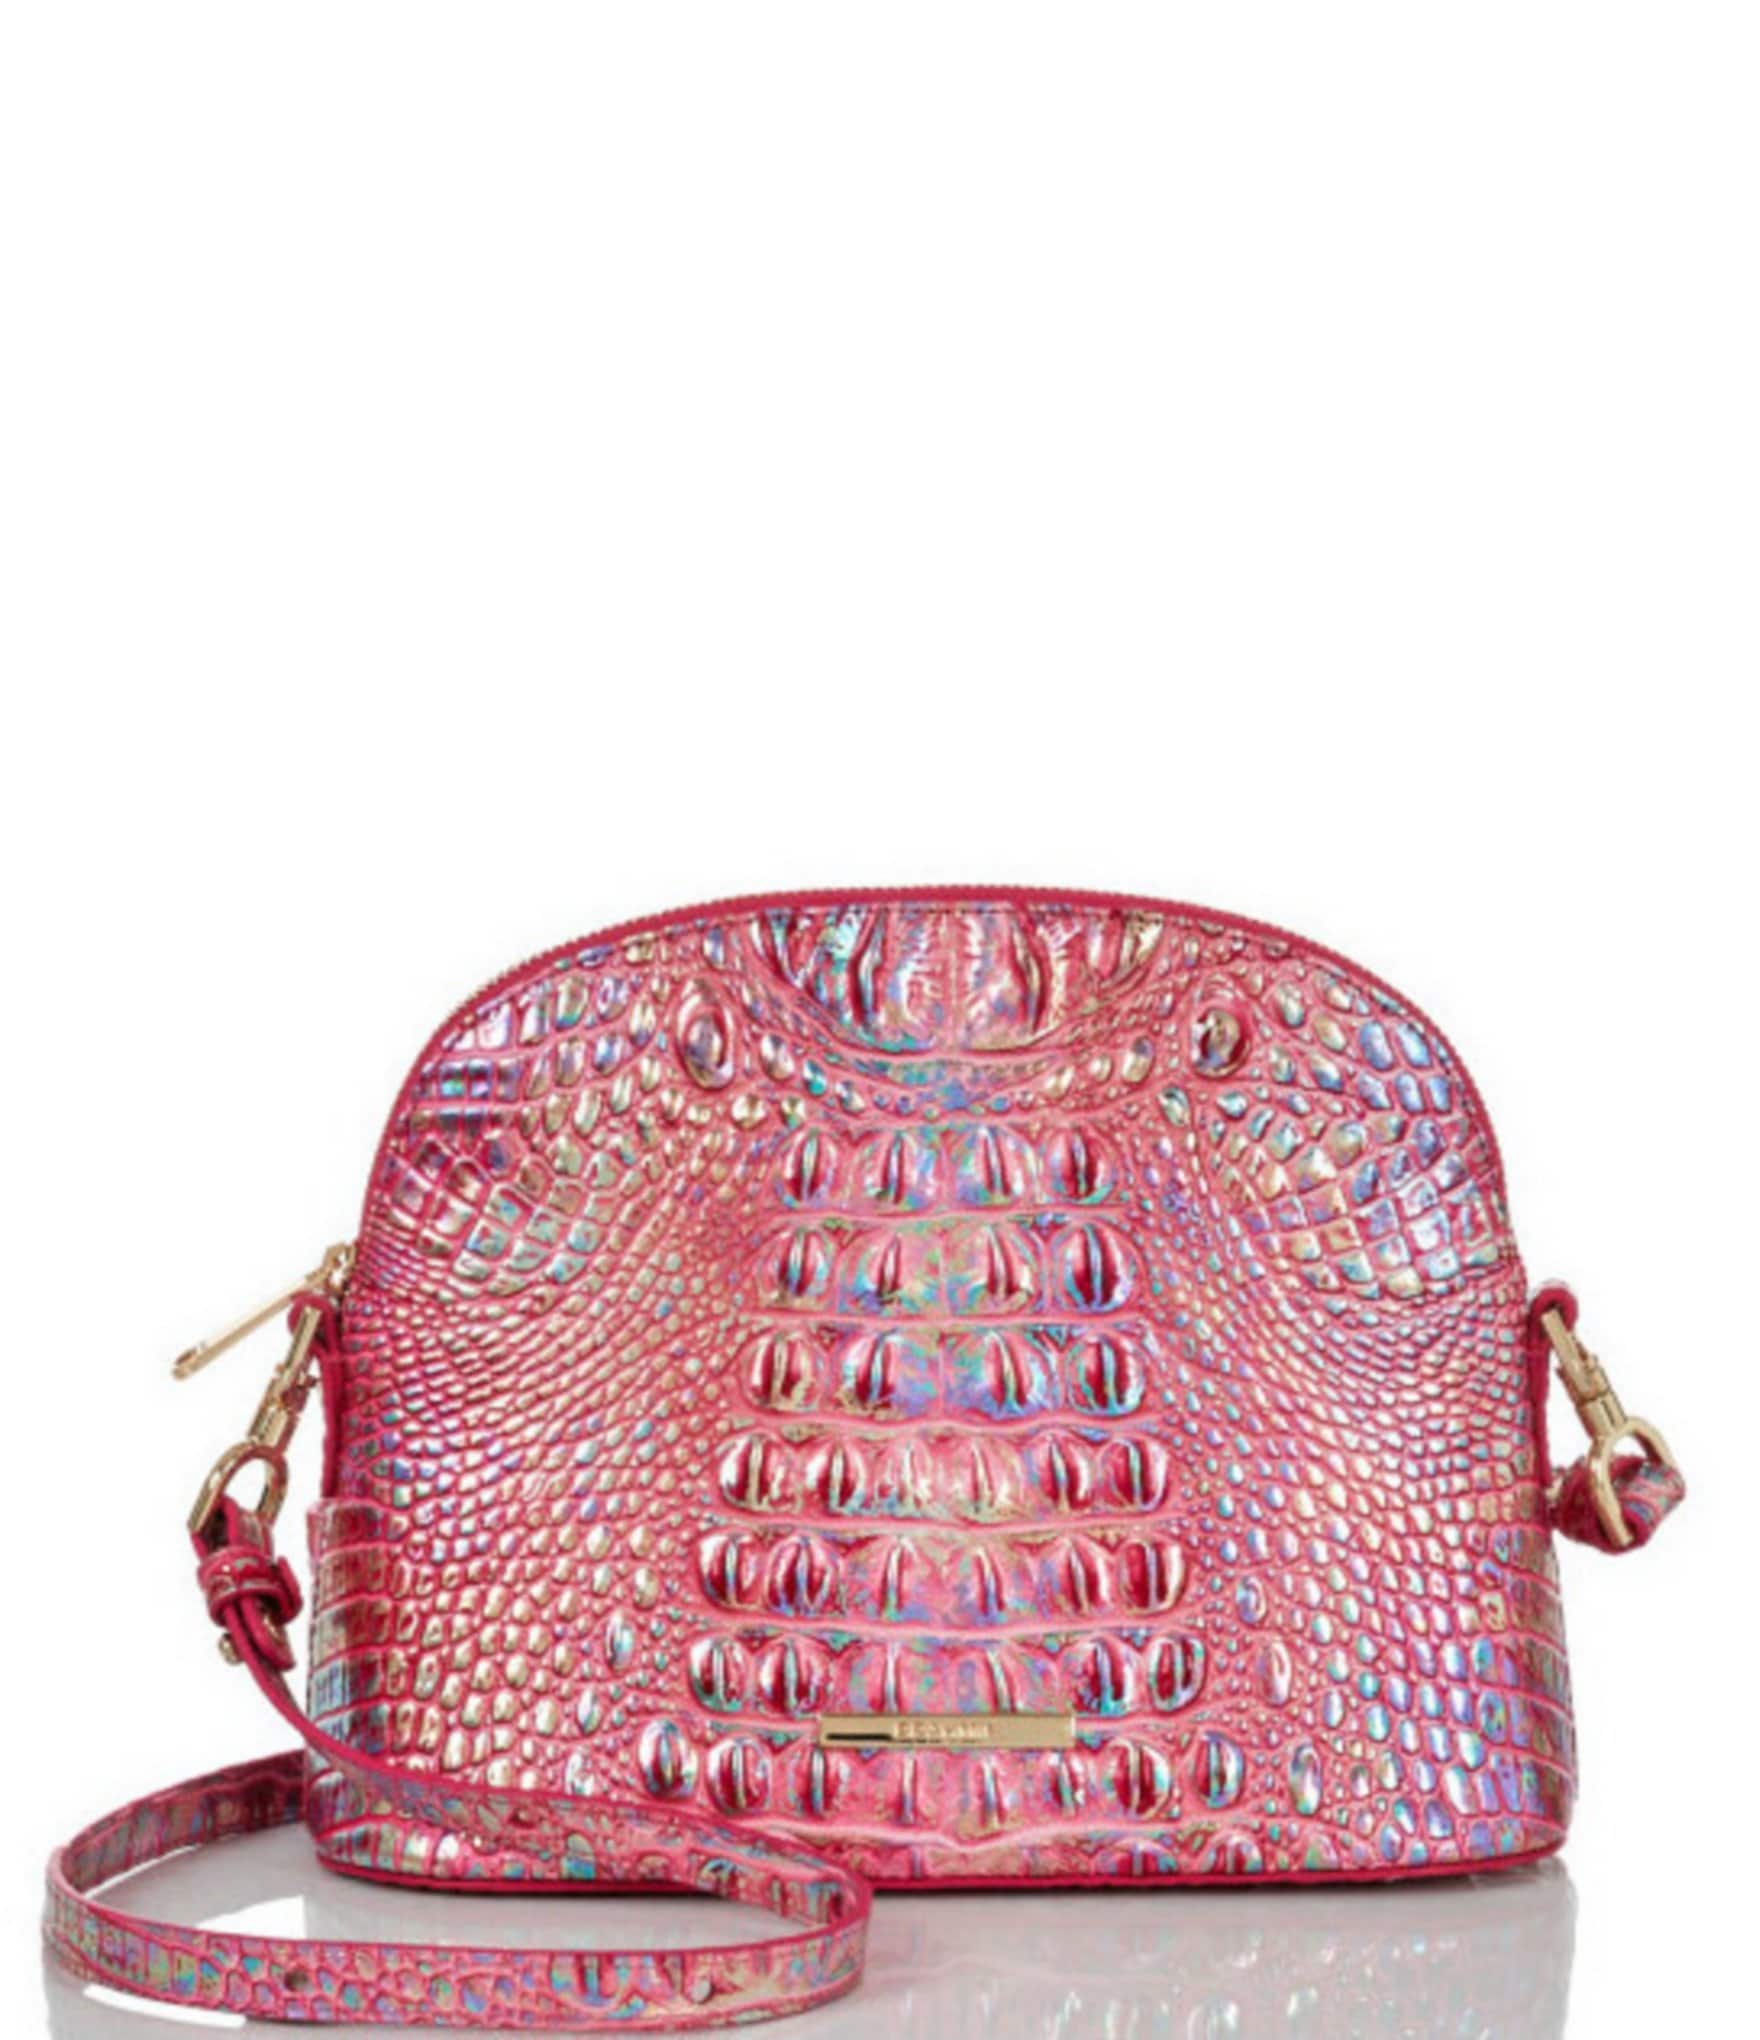 Neon Pink Snakeskin Embossed Baguette Bag